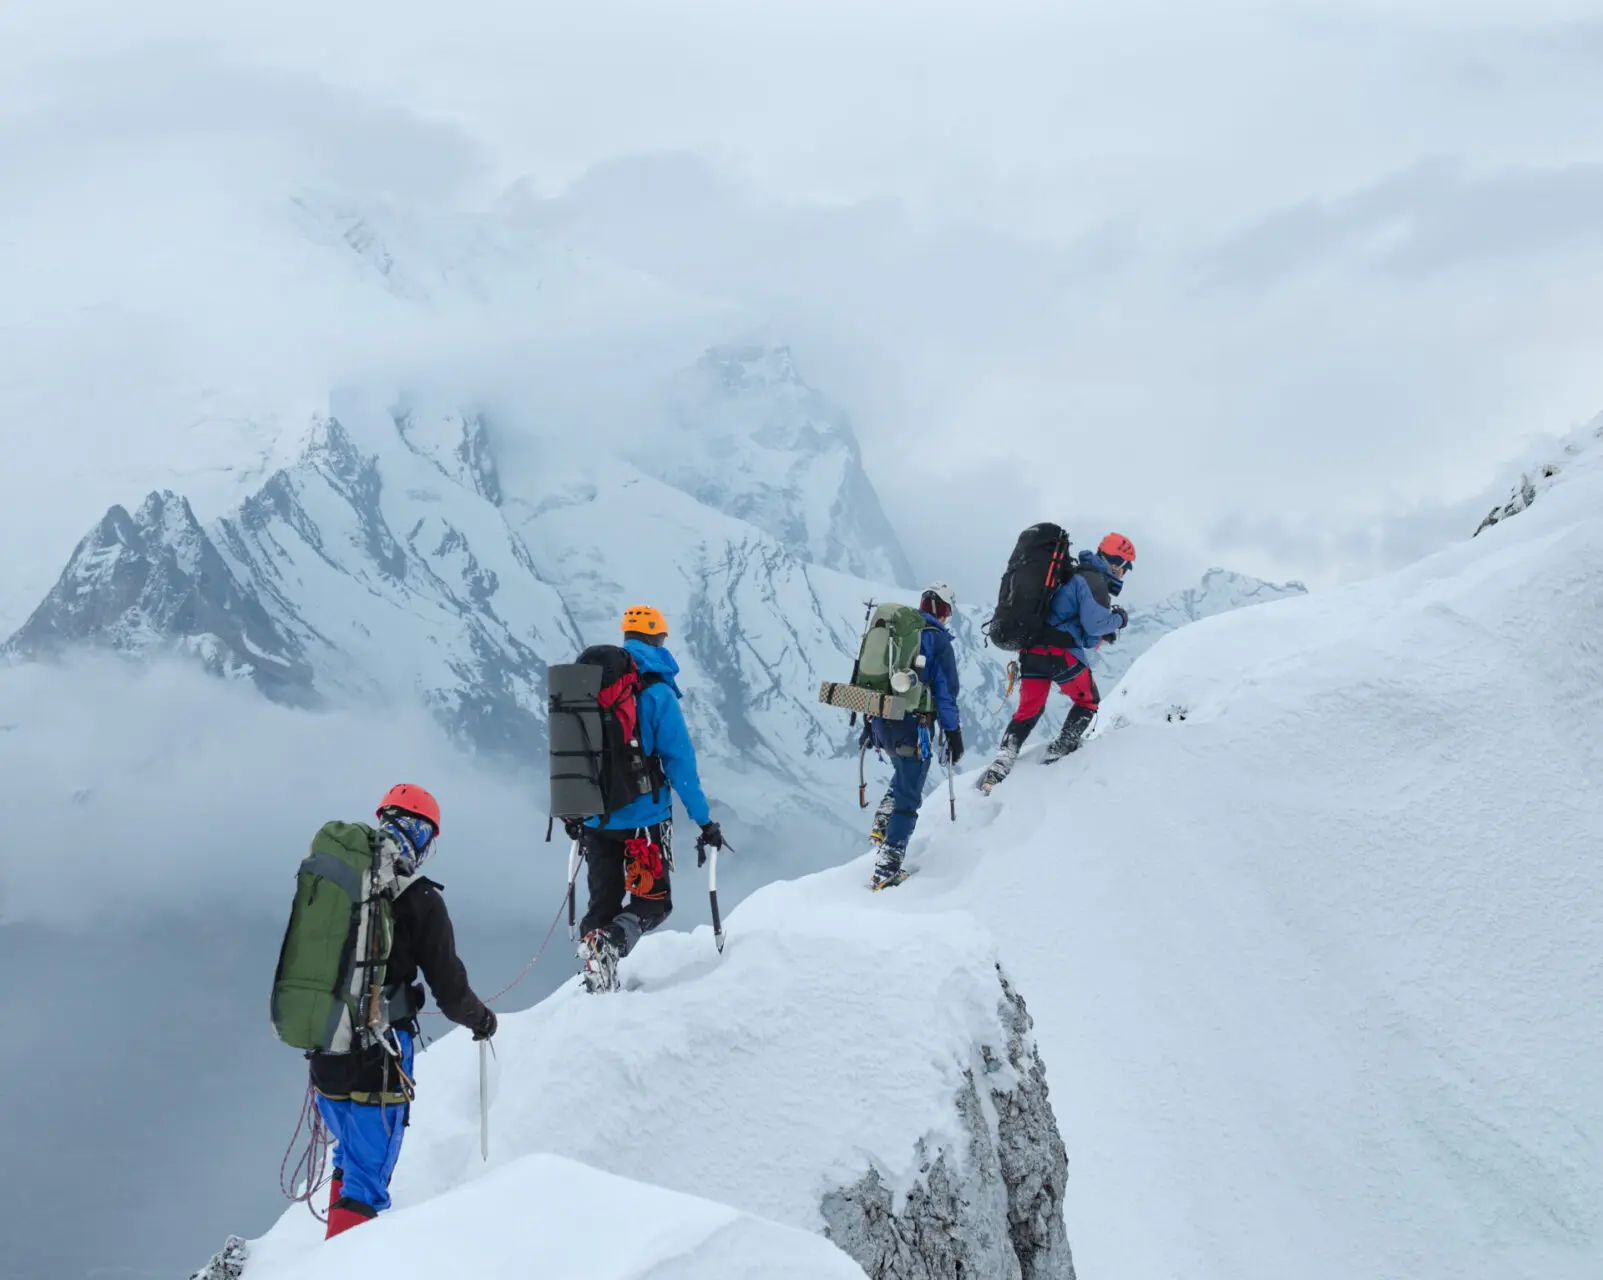 Team of mountain climbers walking on narrow ridge in winter scenery